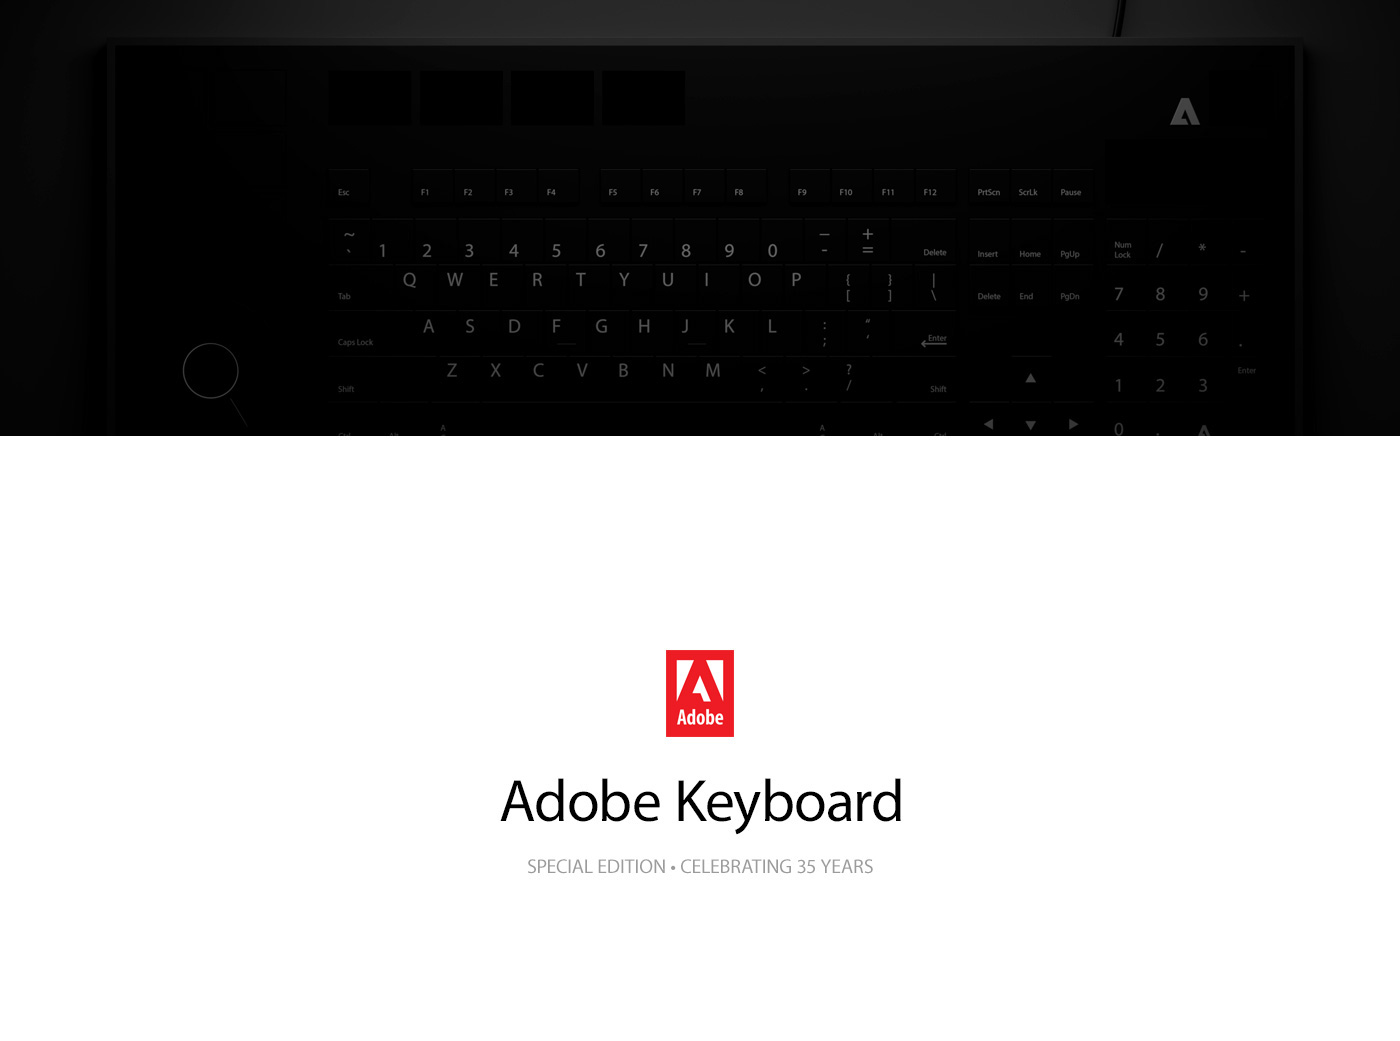 Dark mode screenss idea #290: Adobe Keyboard